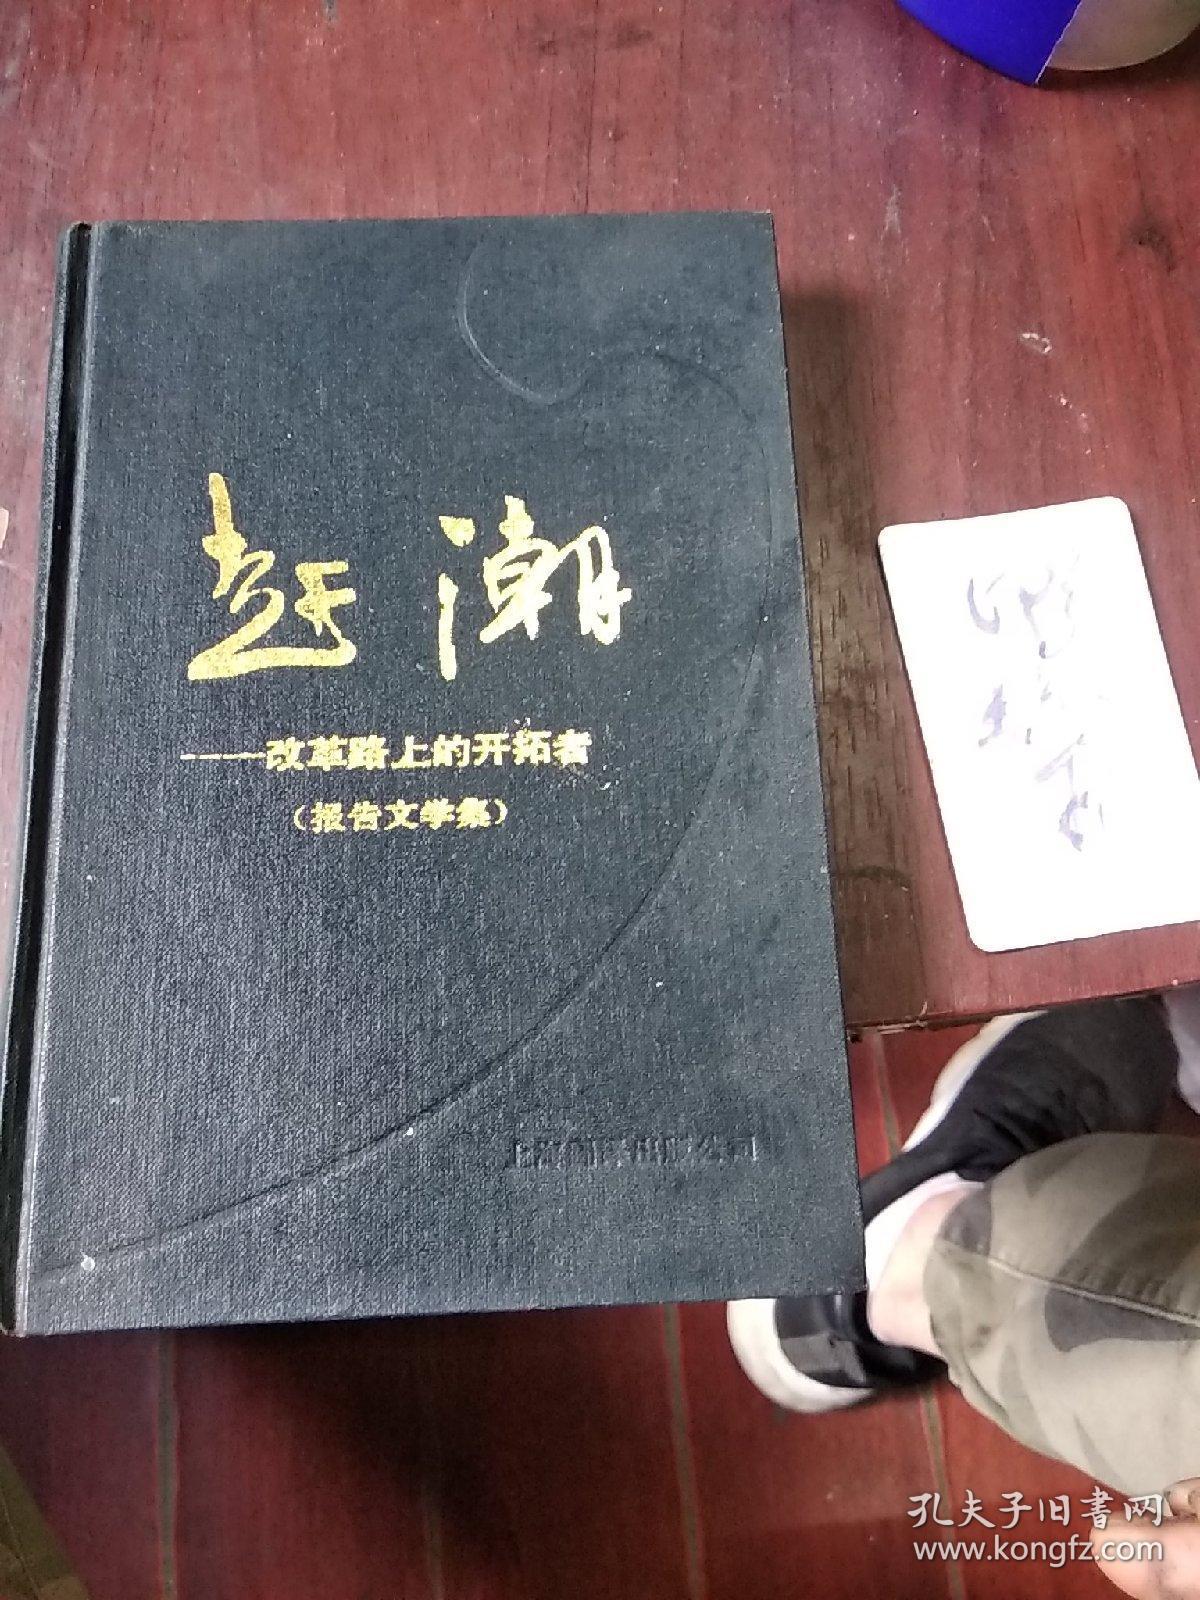 赶潮一改革路上的开拓者》1989年一版一印！作者邱正平签名本！上海翻译出版公司出版